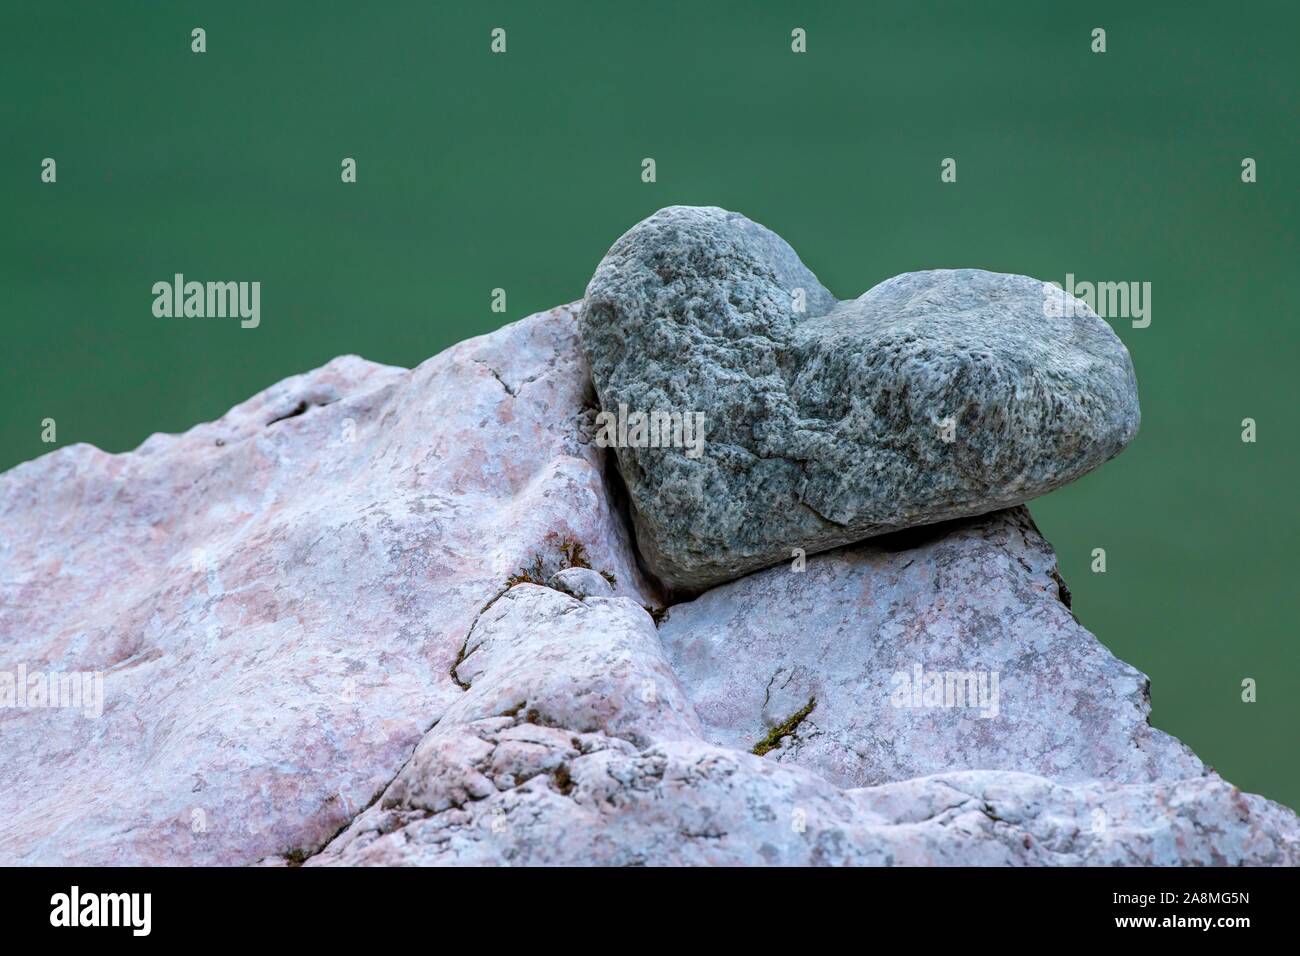 Stein in der Form eines Herzens liegt in der Aussparung des anderen Stein, Tiefenbachklamm, Kramsach, Tirol, Österreich Stockfoto